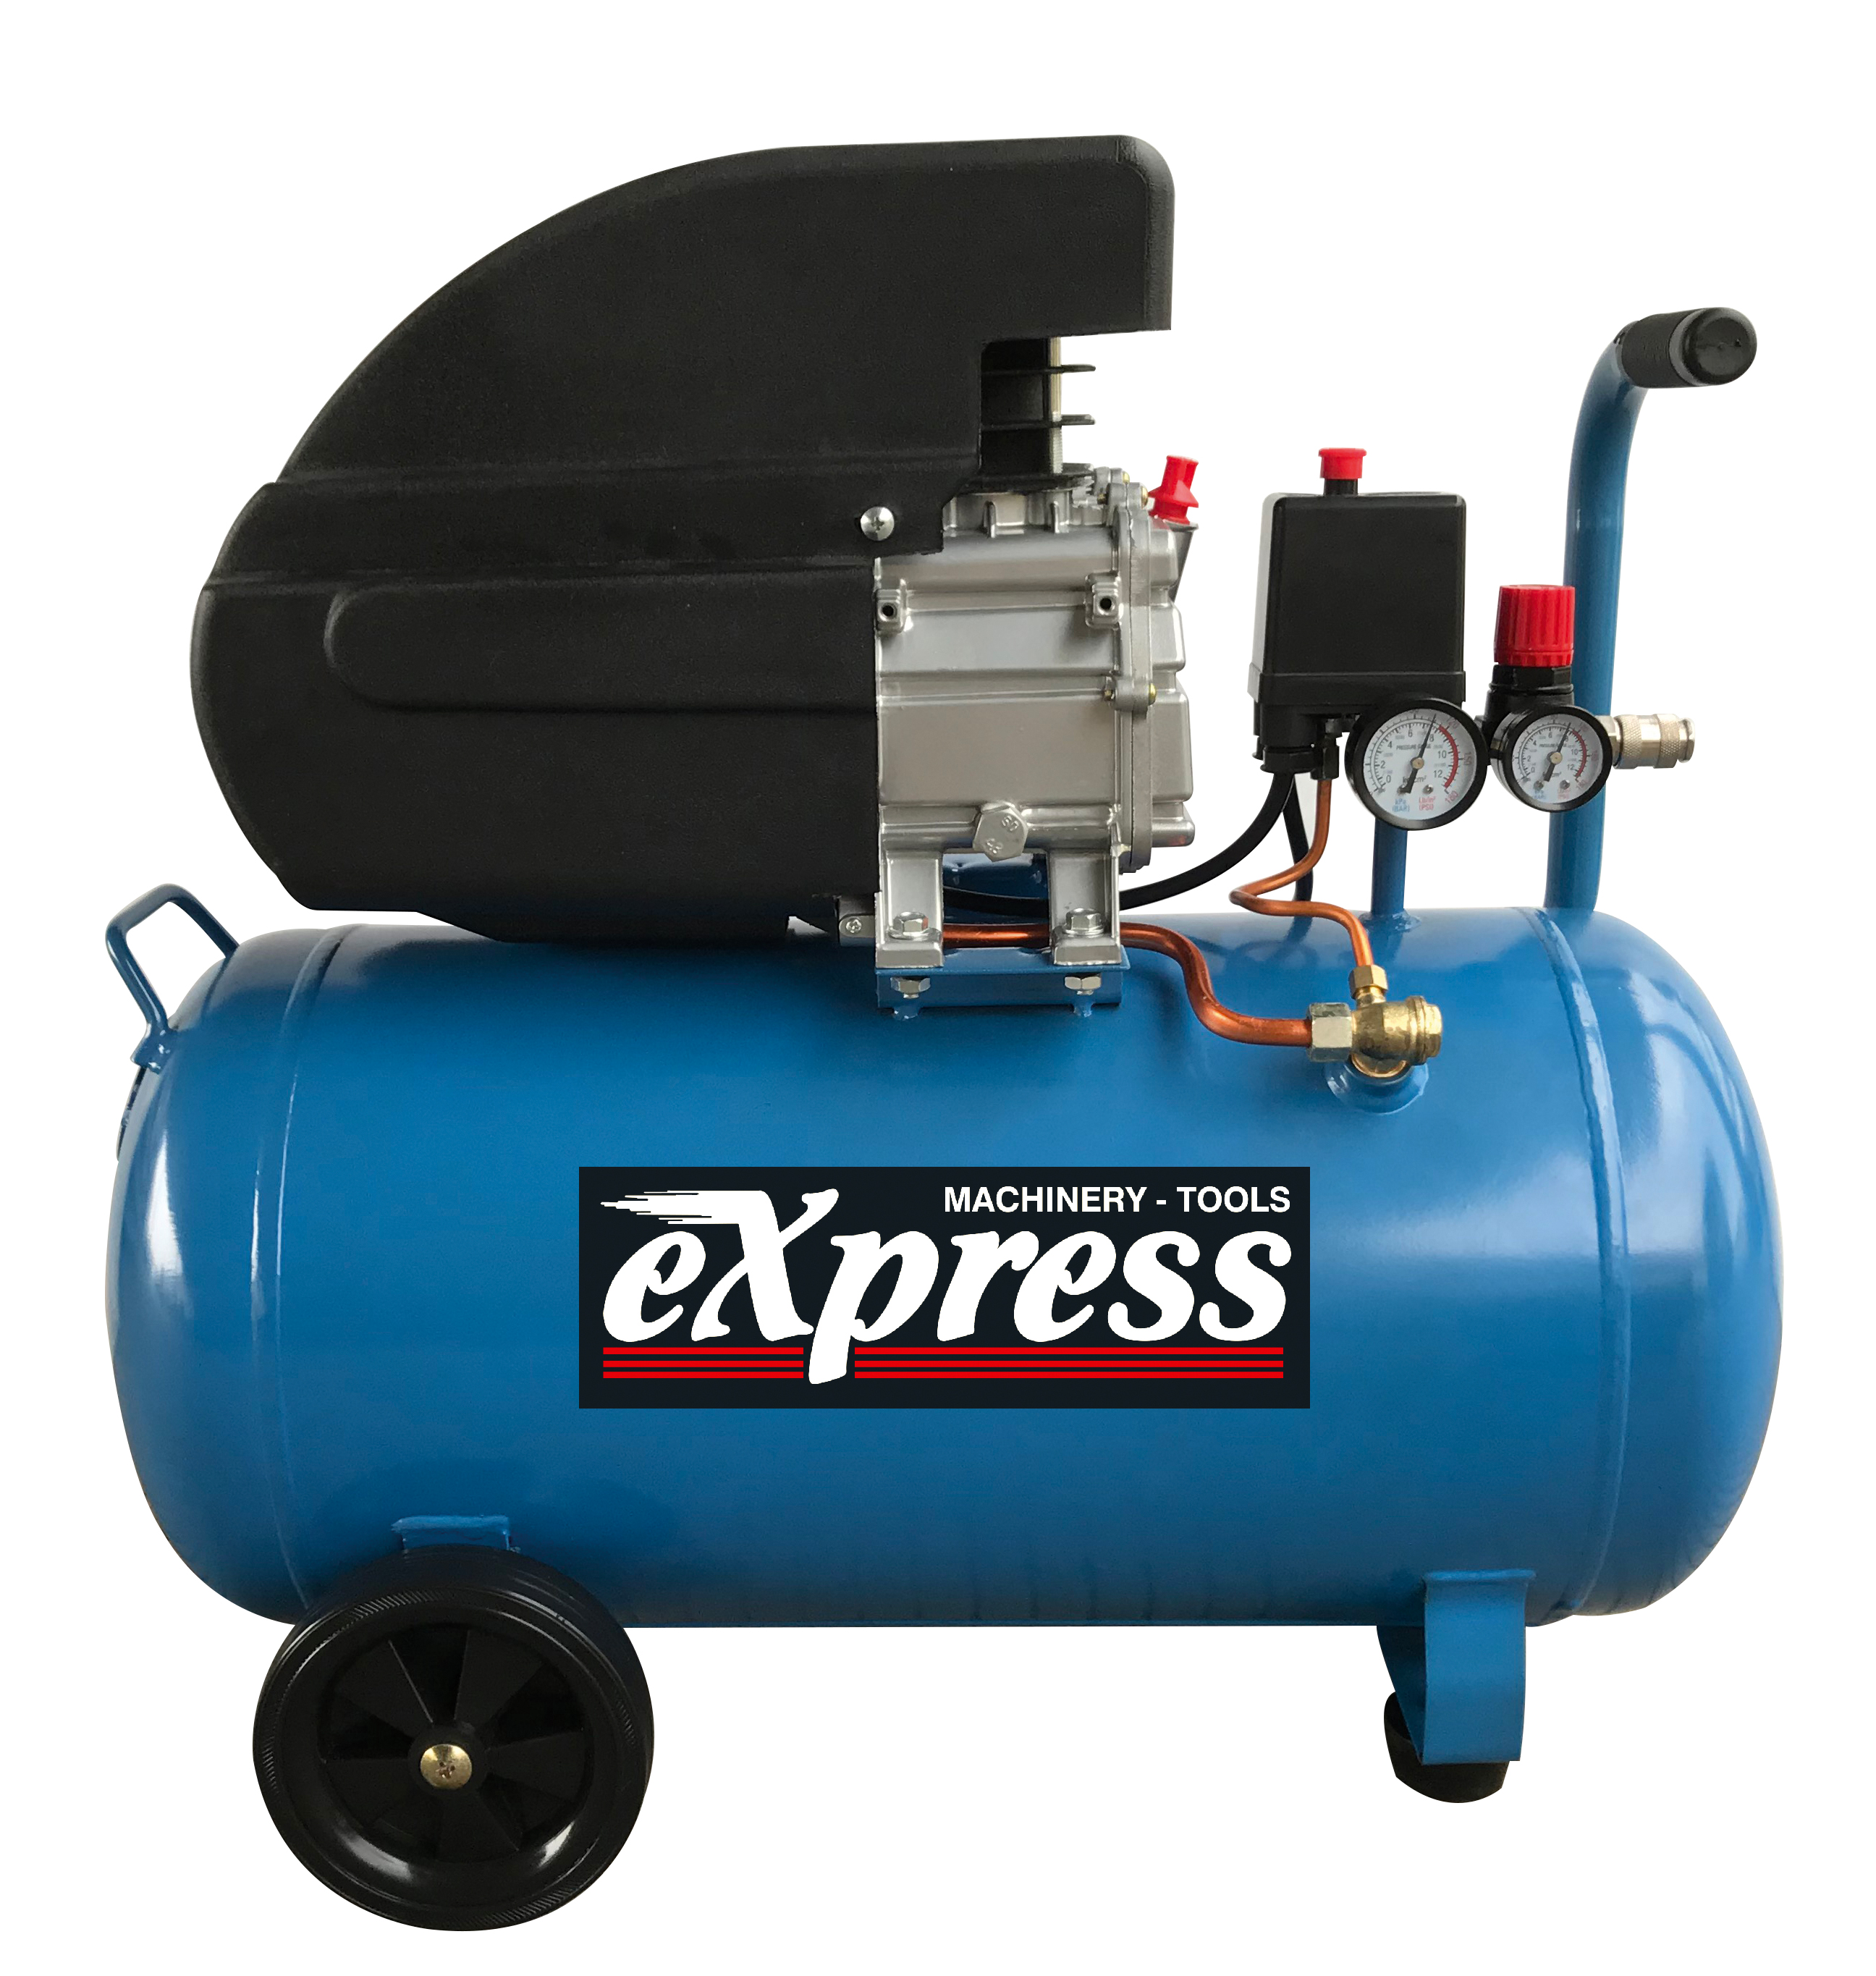 1 Cylinder Aircompressor 50Lt 2HP Express